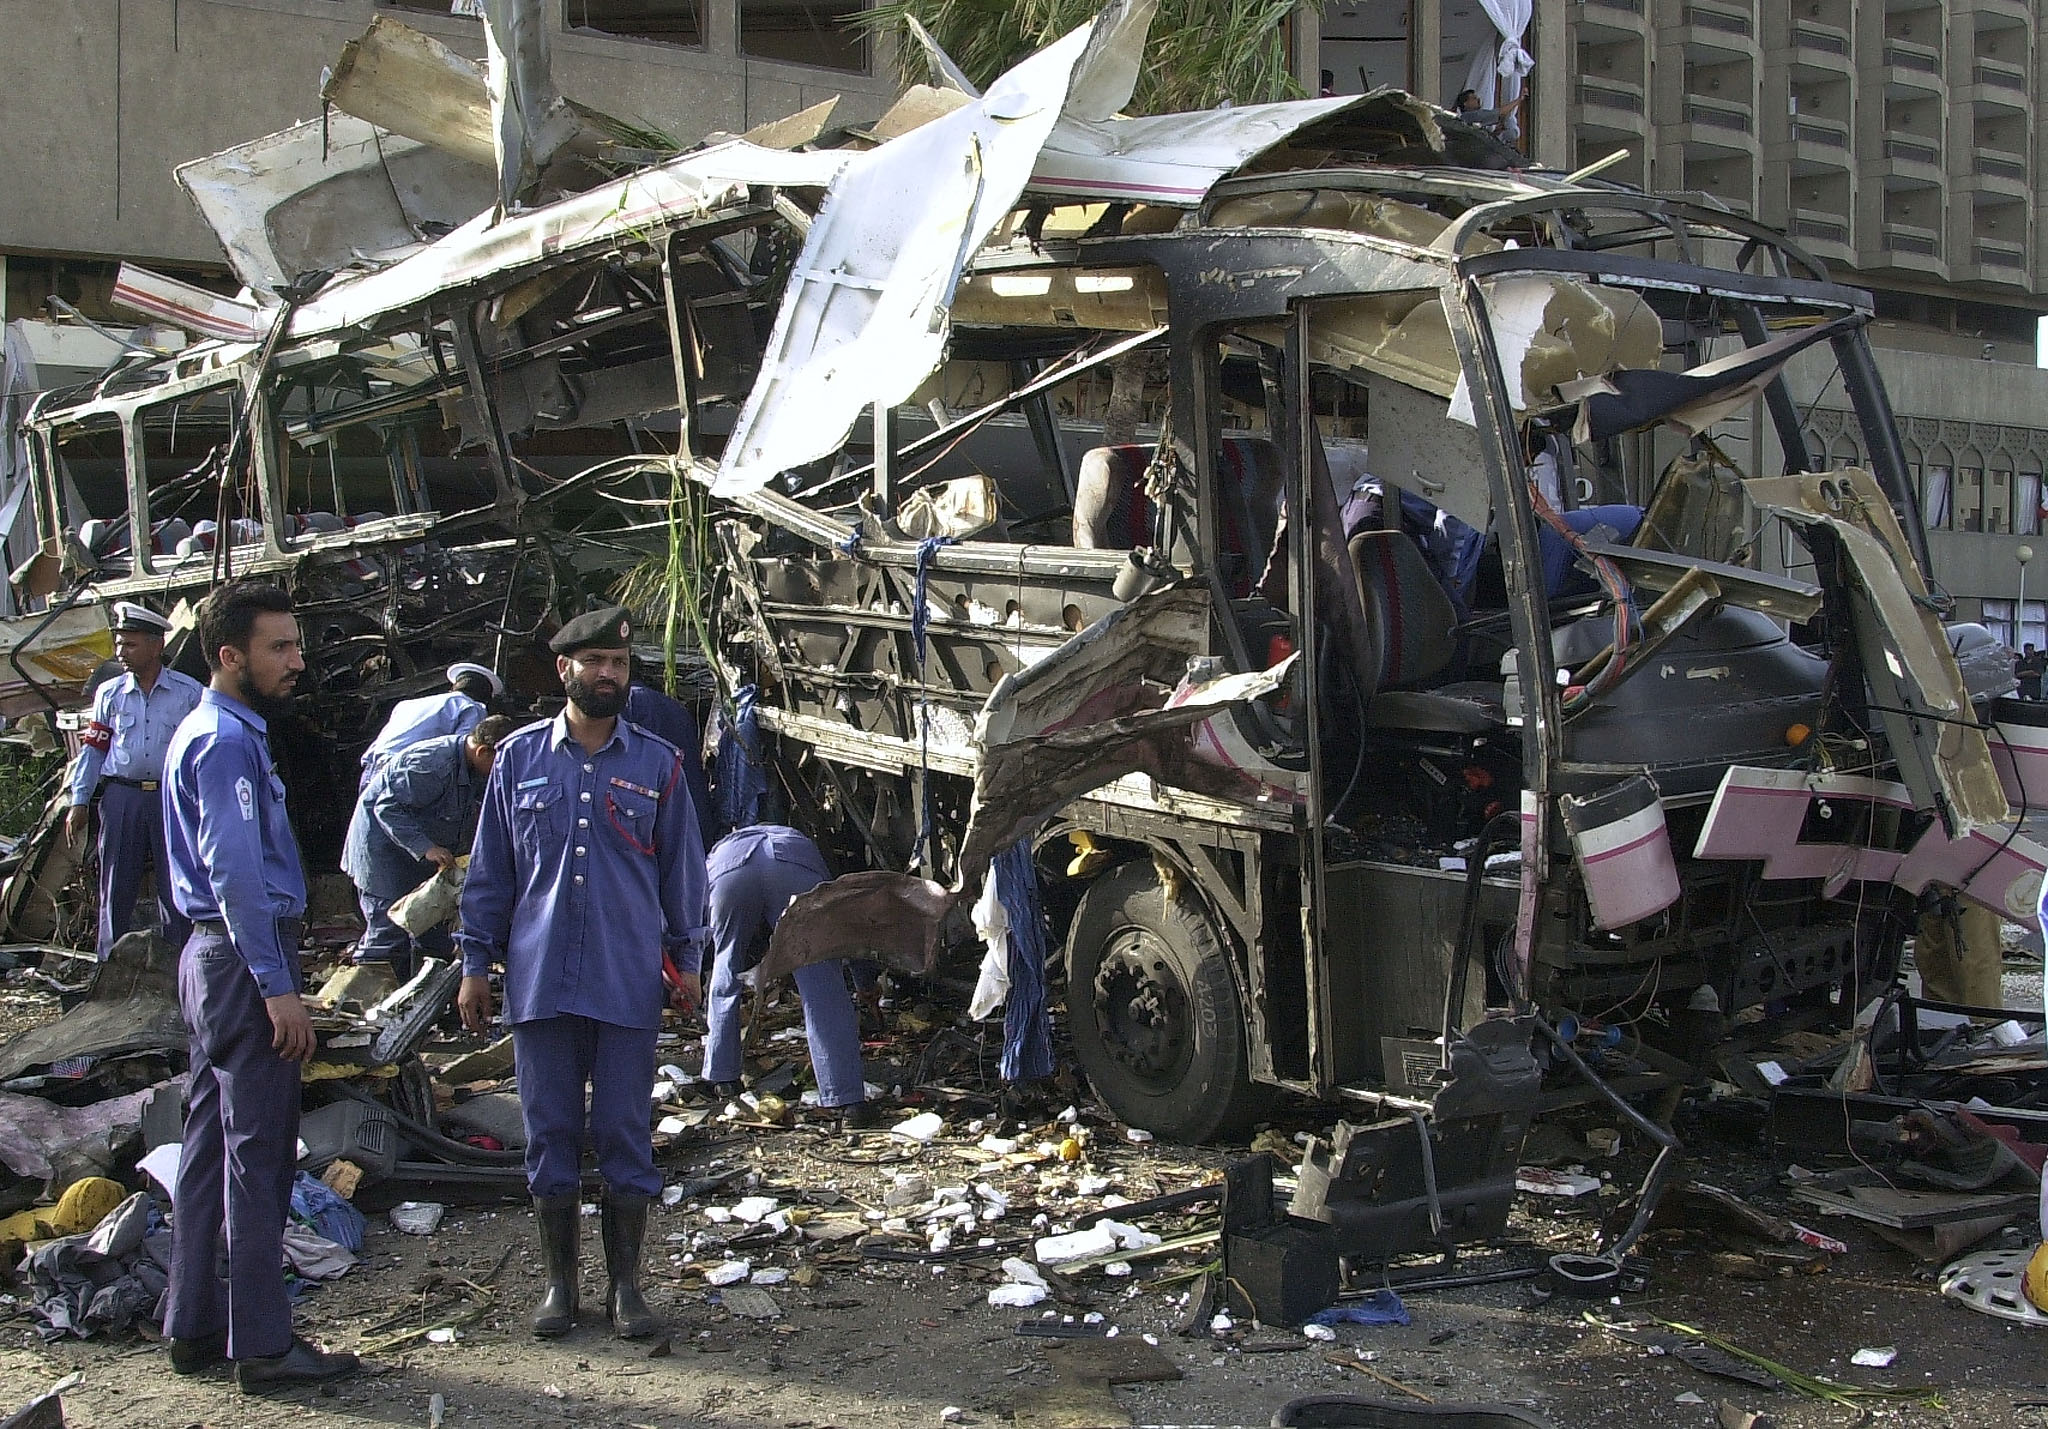 Le 8 mai 2002, une bombe avait explosé à Karachi détruisant un bus qui transportait des employés français de la Direction des constructions navales, tuant 11 d'entre eux. AFP PHOTO/Aamir Qureshi